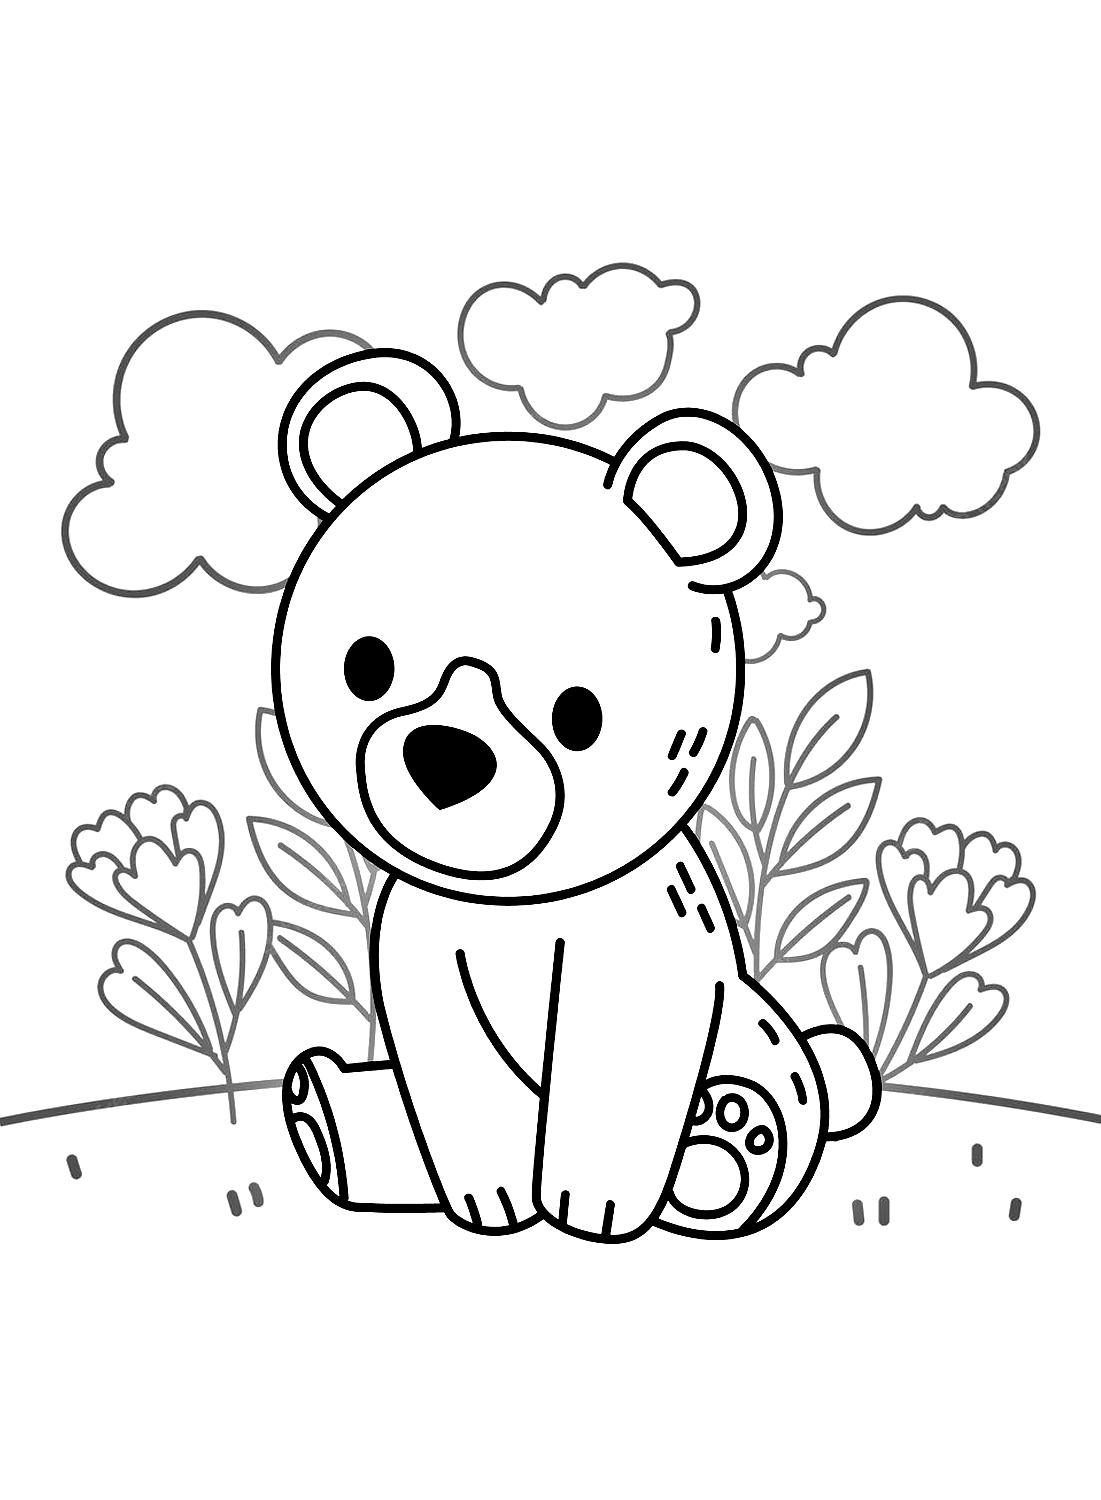 Disegni da colorare di orsacchiotti di Teddy Bear